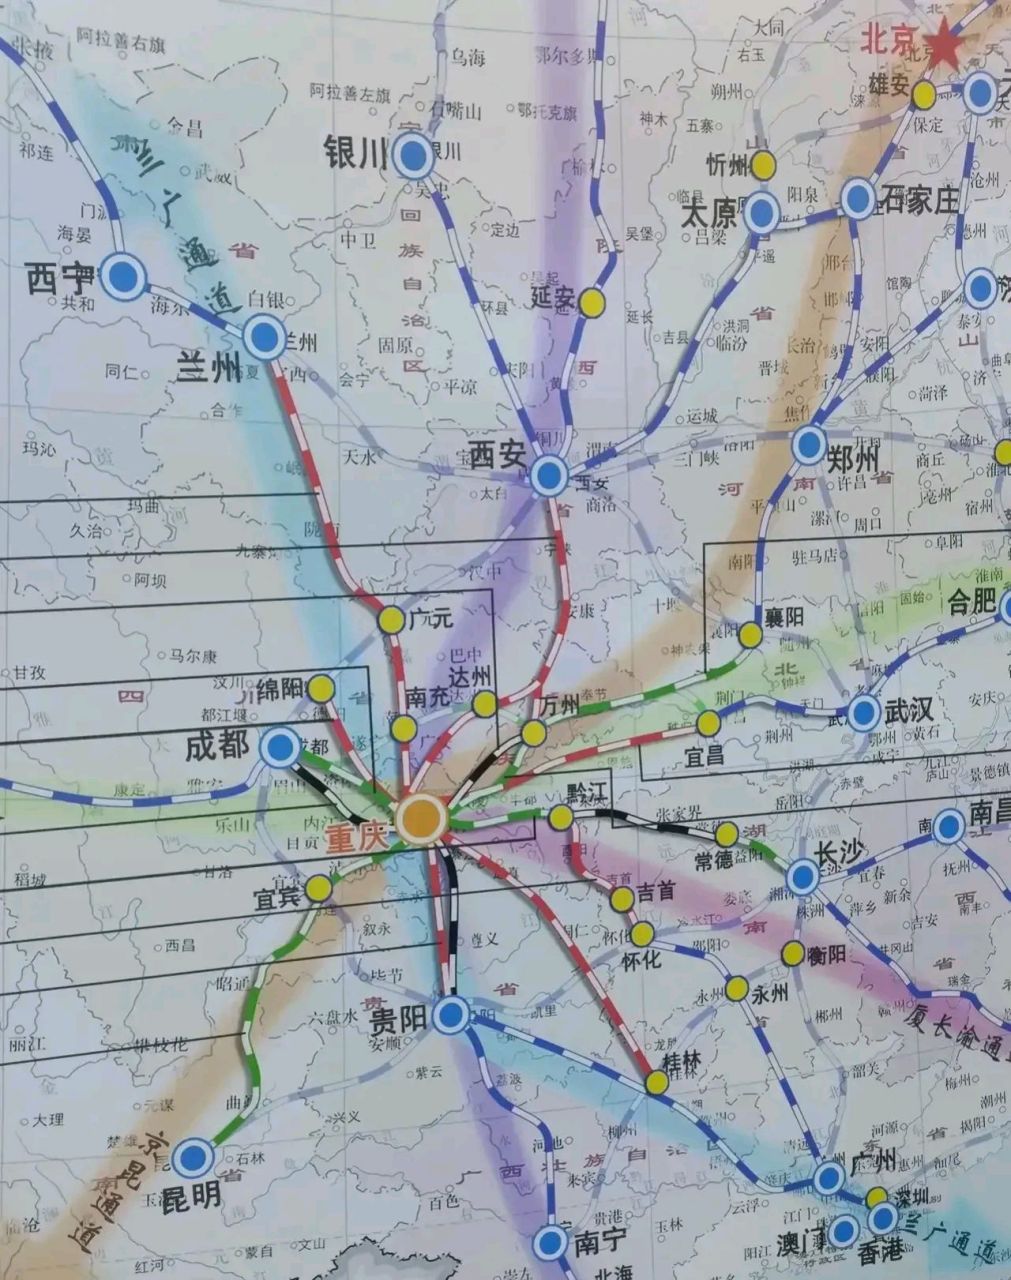 刚看到一张重庆高铁规划图,从中可以看到,兰渝高铁线路从重庆主城区